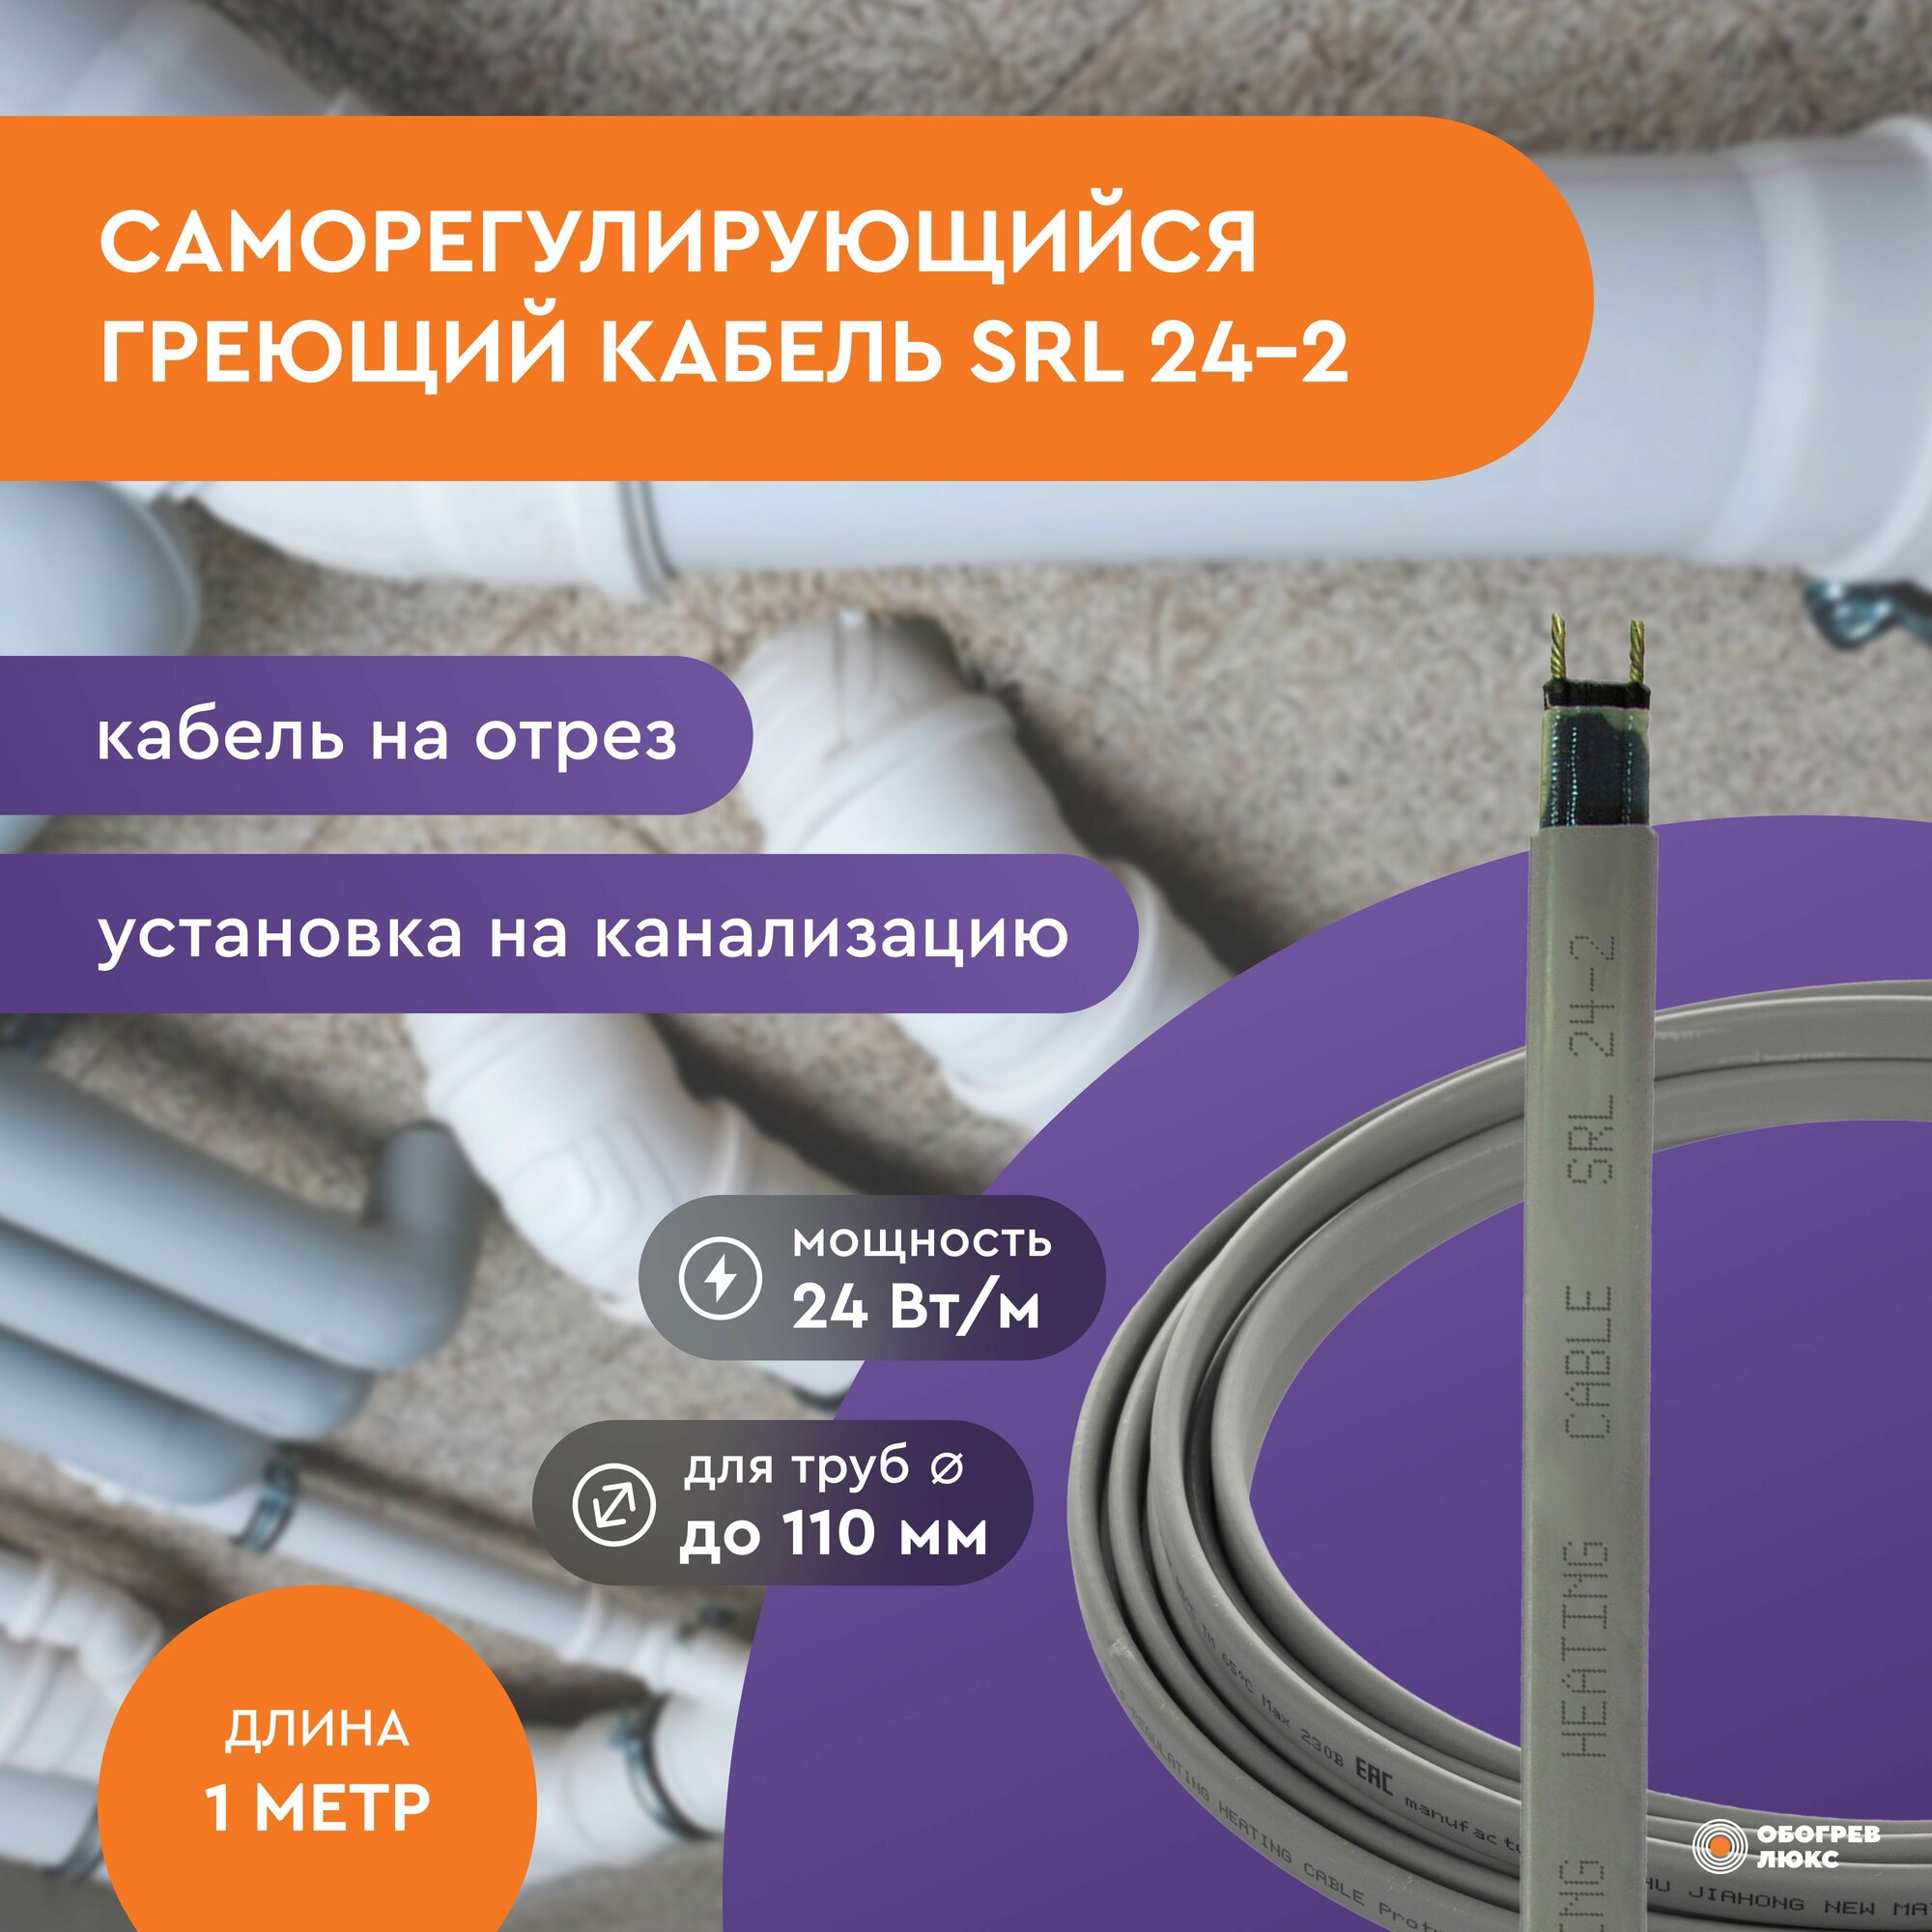 Греющий кабель SRL 24-2 (1 м) 24 Вт не экран. на отрез для водопровода и канализации на трубу саморегулирующийся